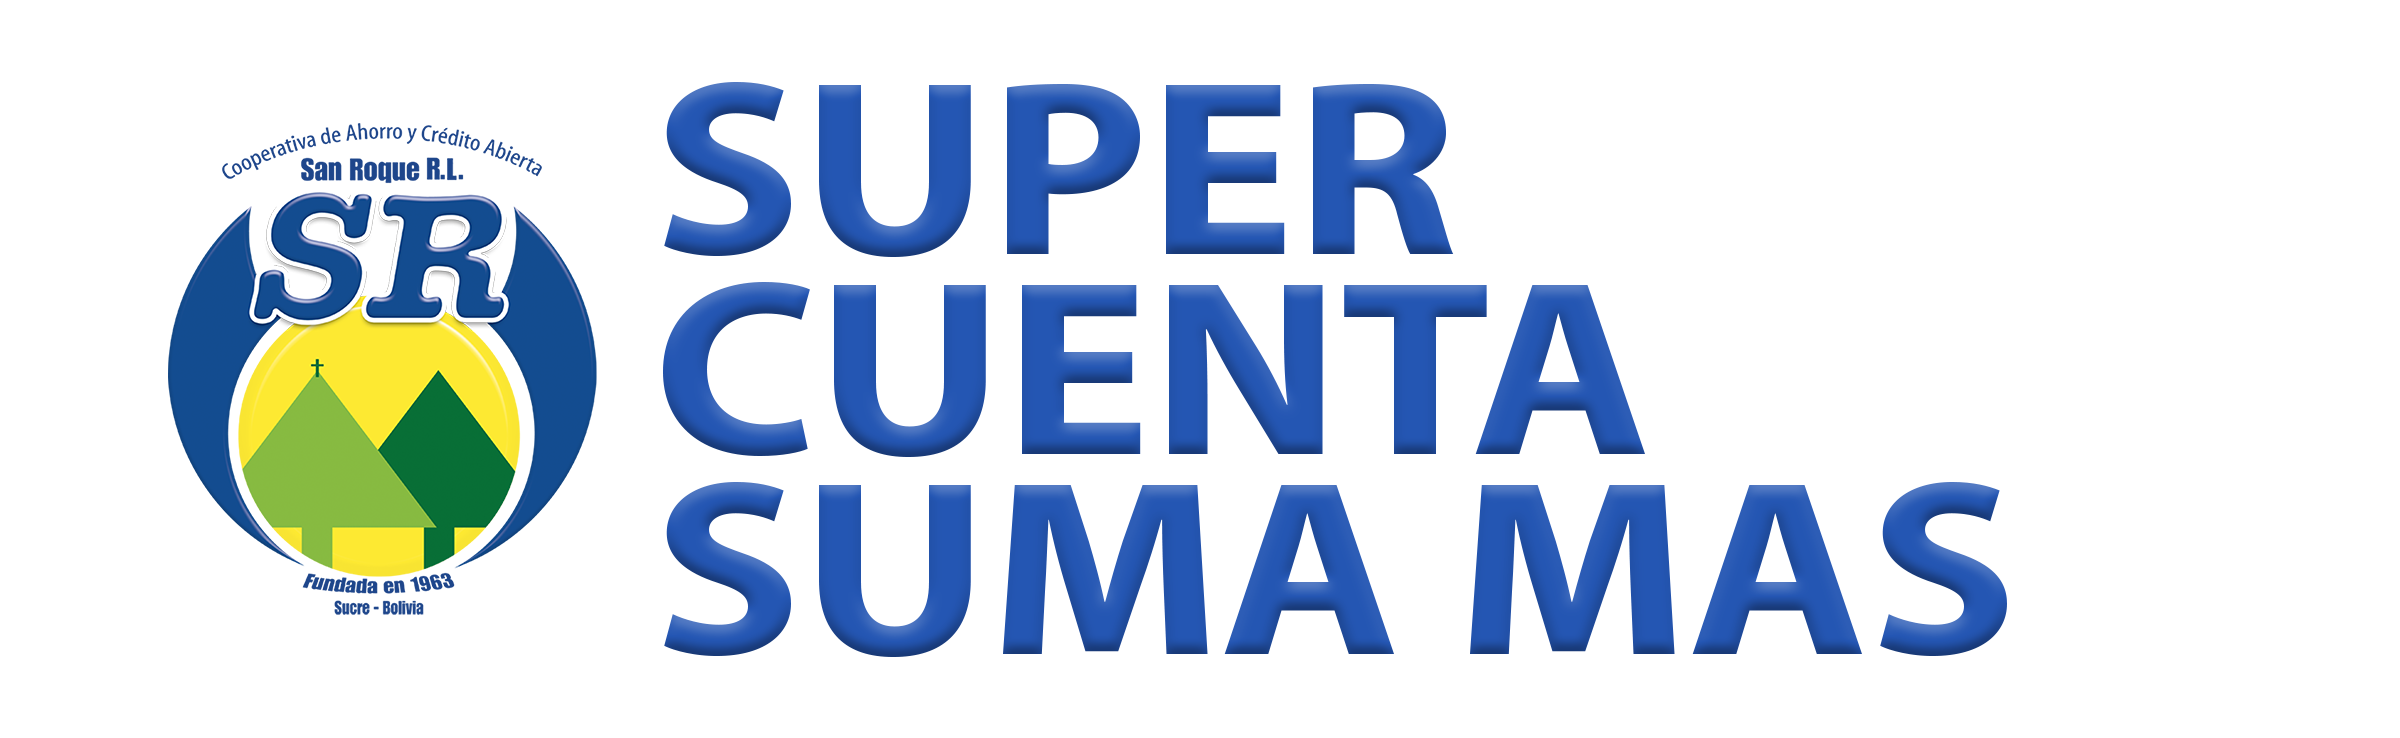 SUPER CUENTA SUMA MAS